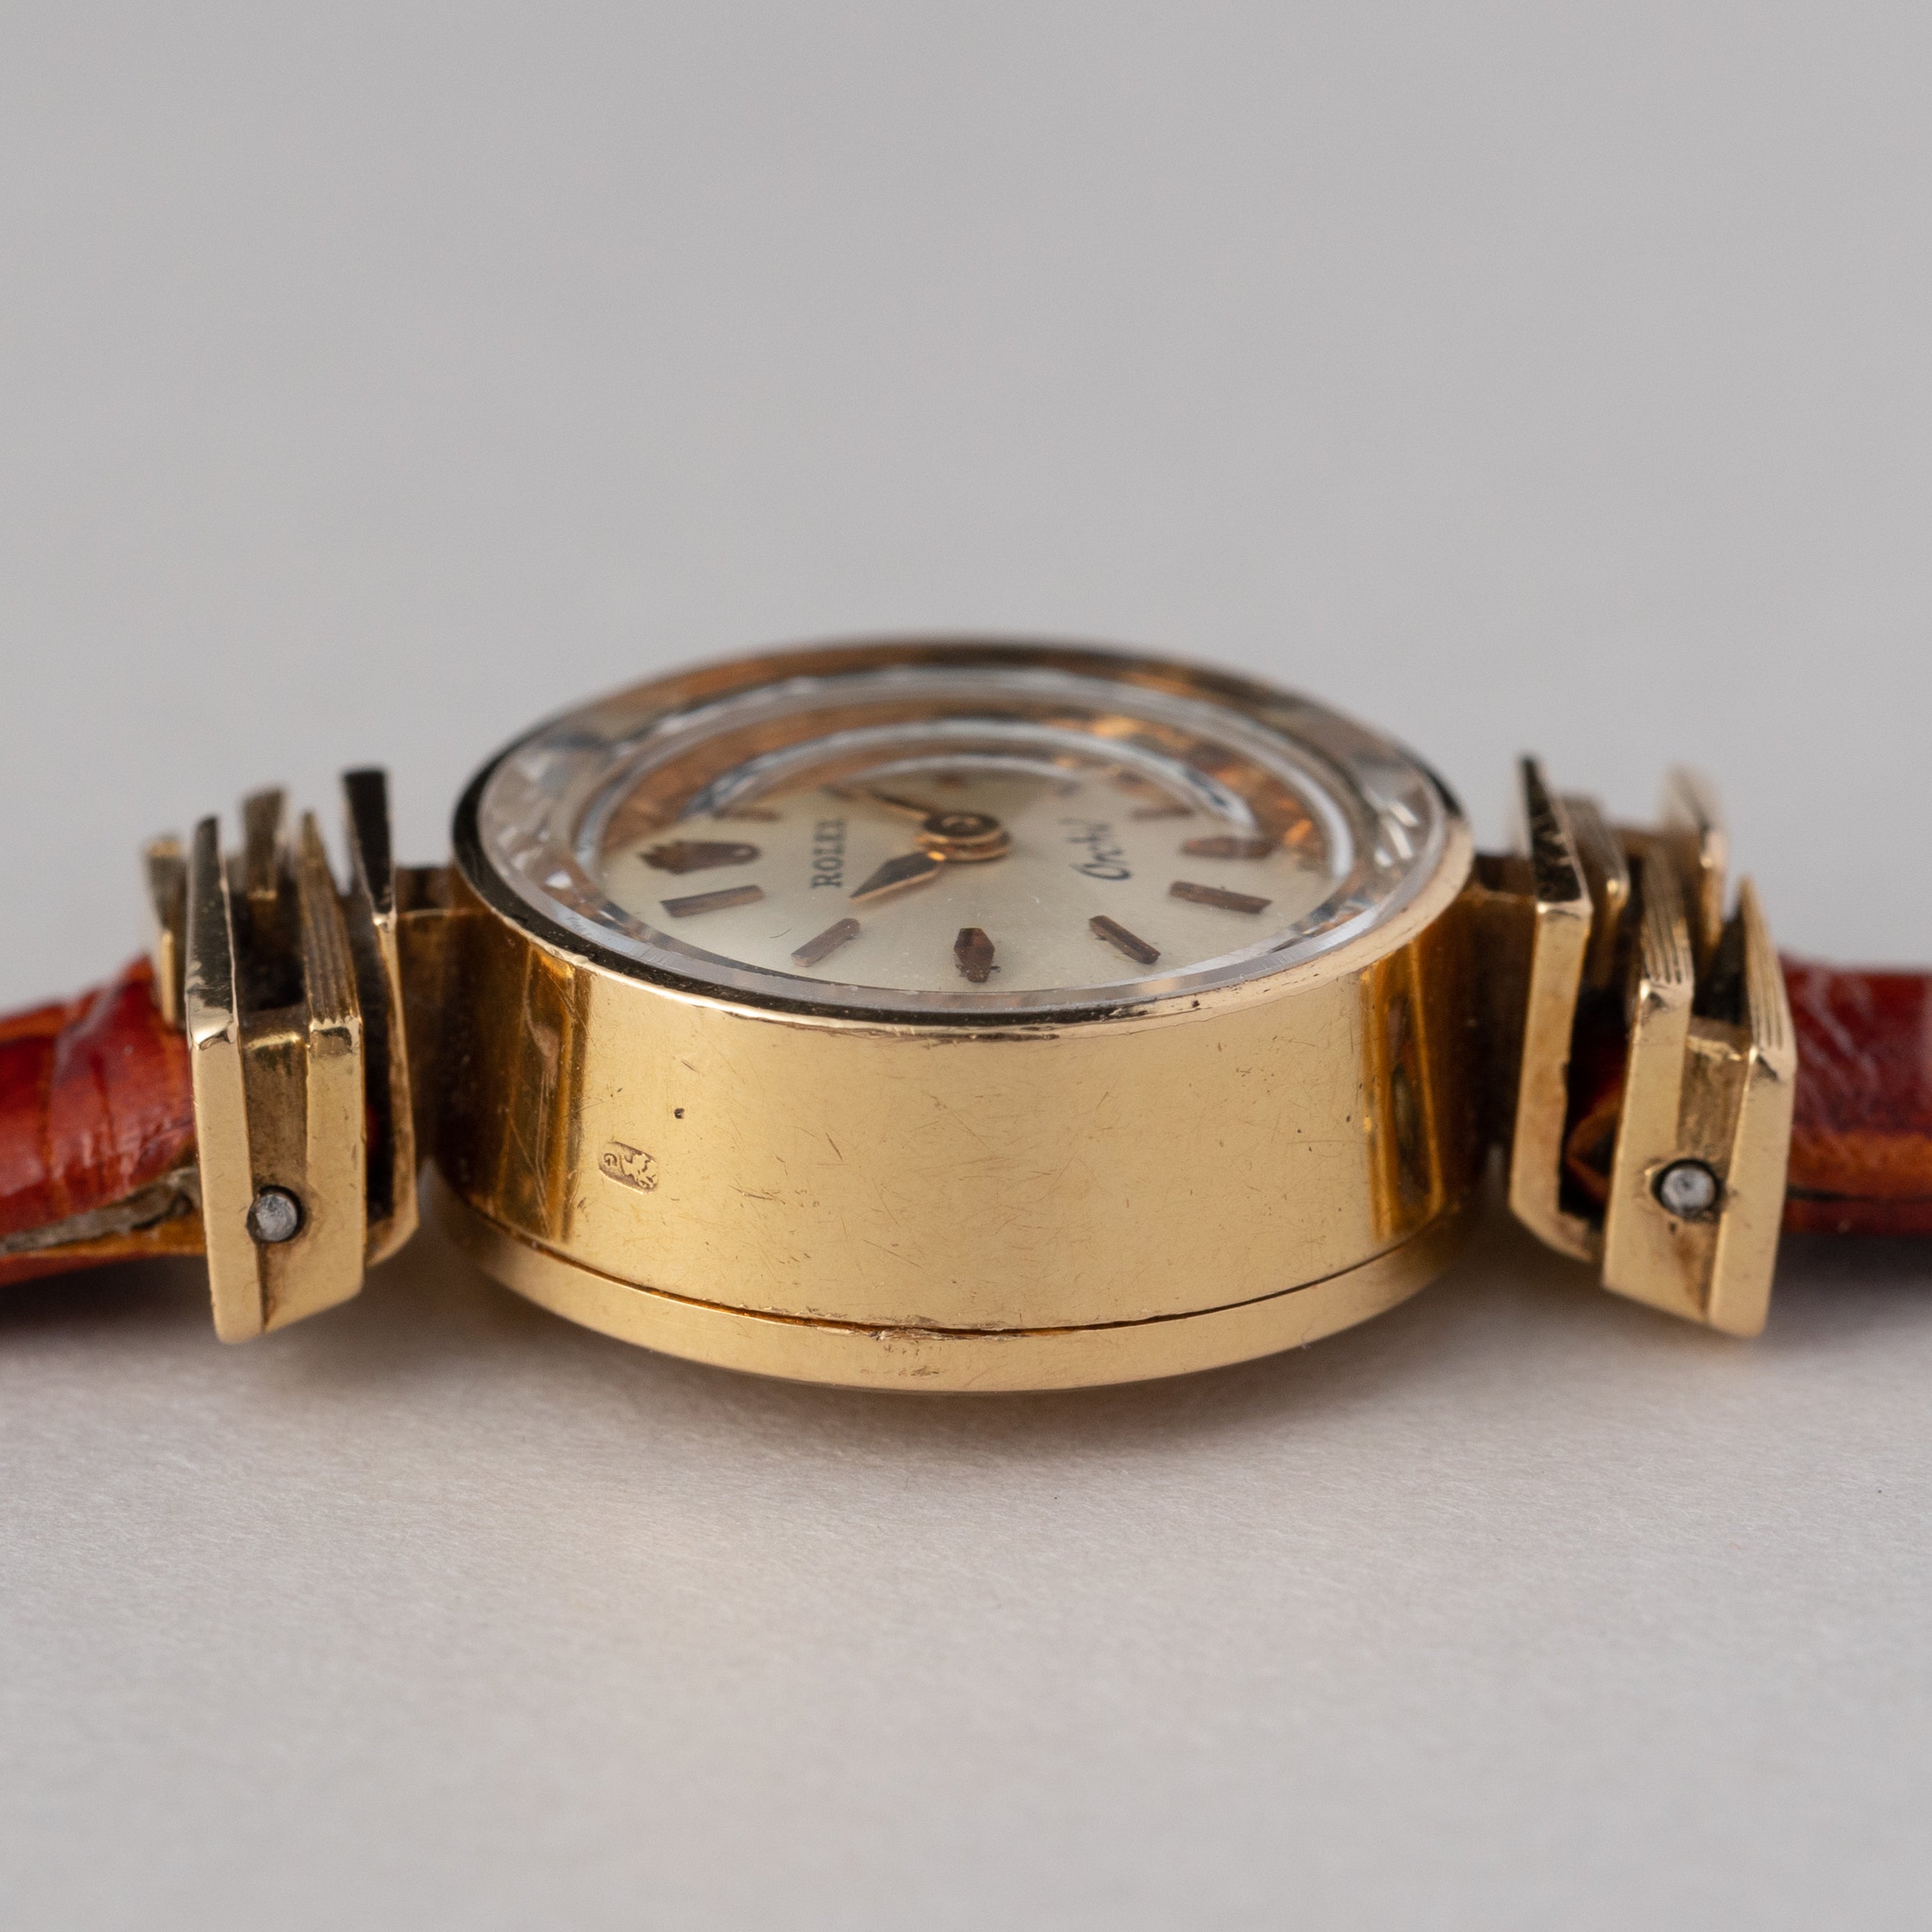 日本直販BURBERRY 腕時計 保証書付き クォーツ 690176 レディース 時計